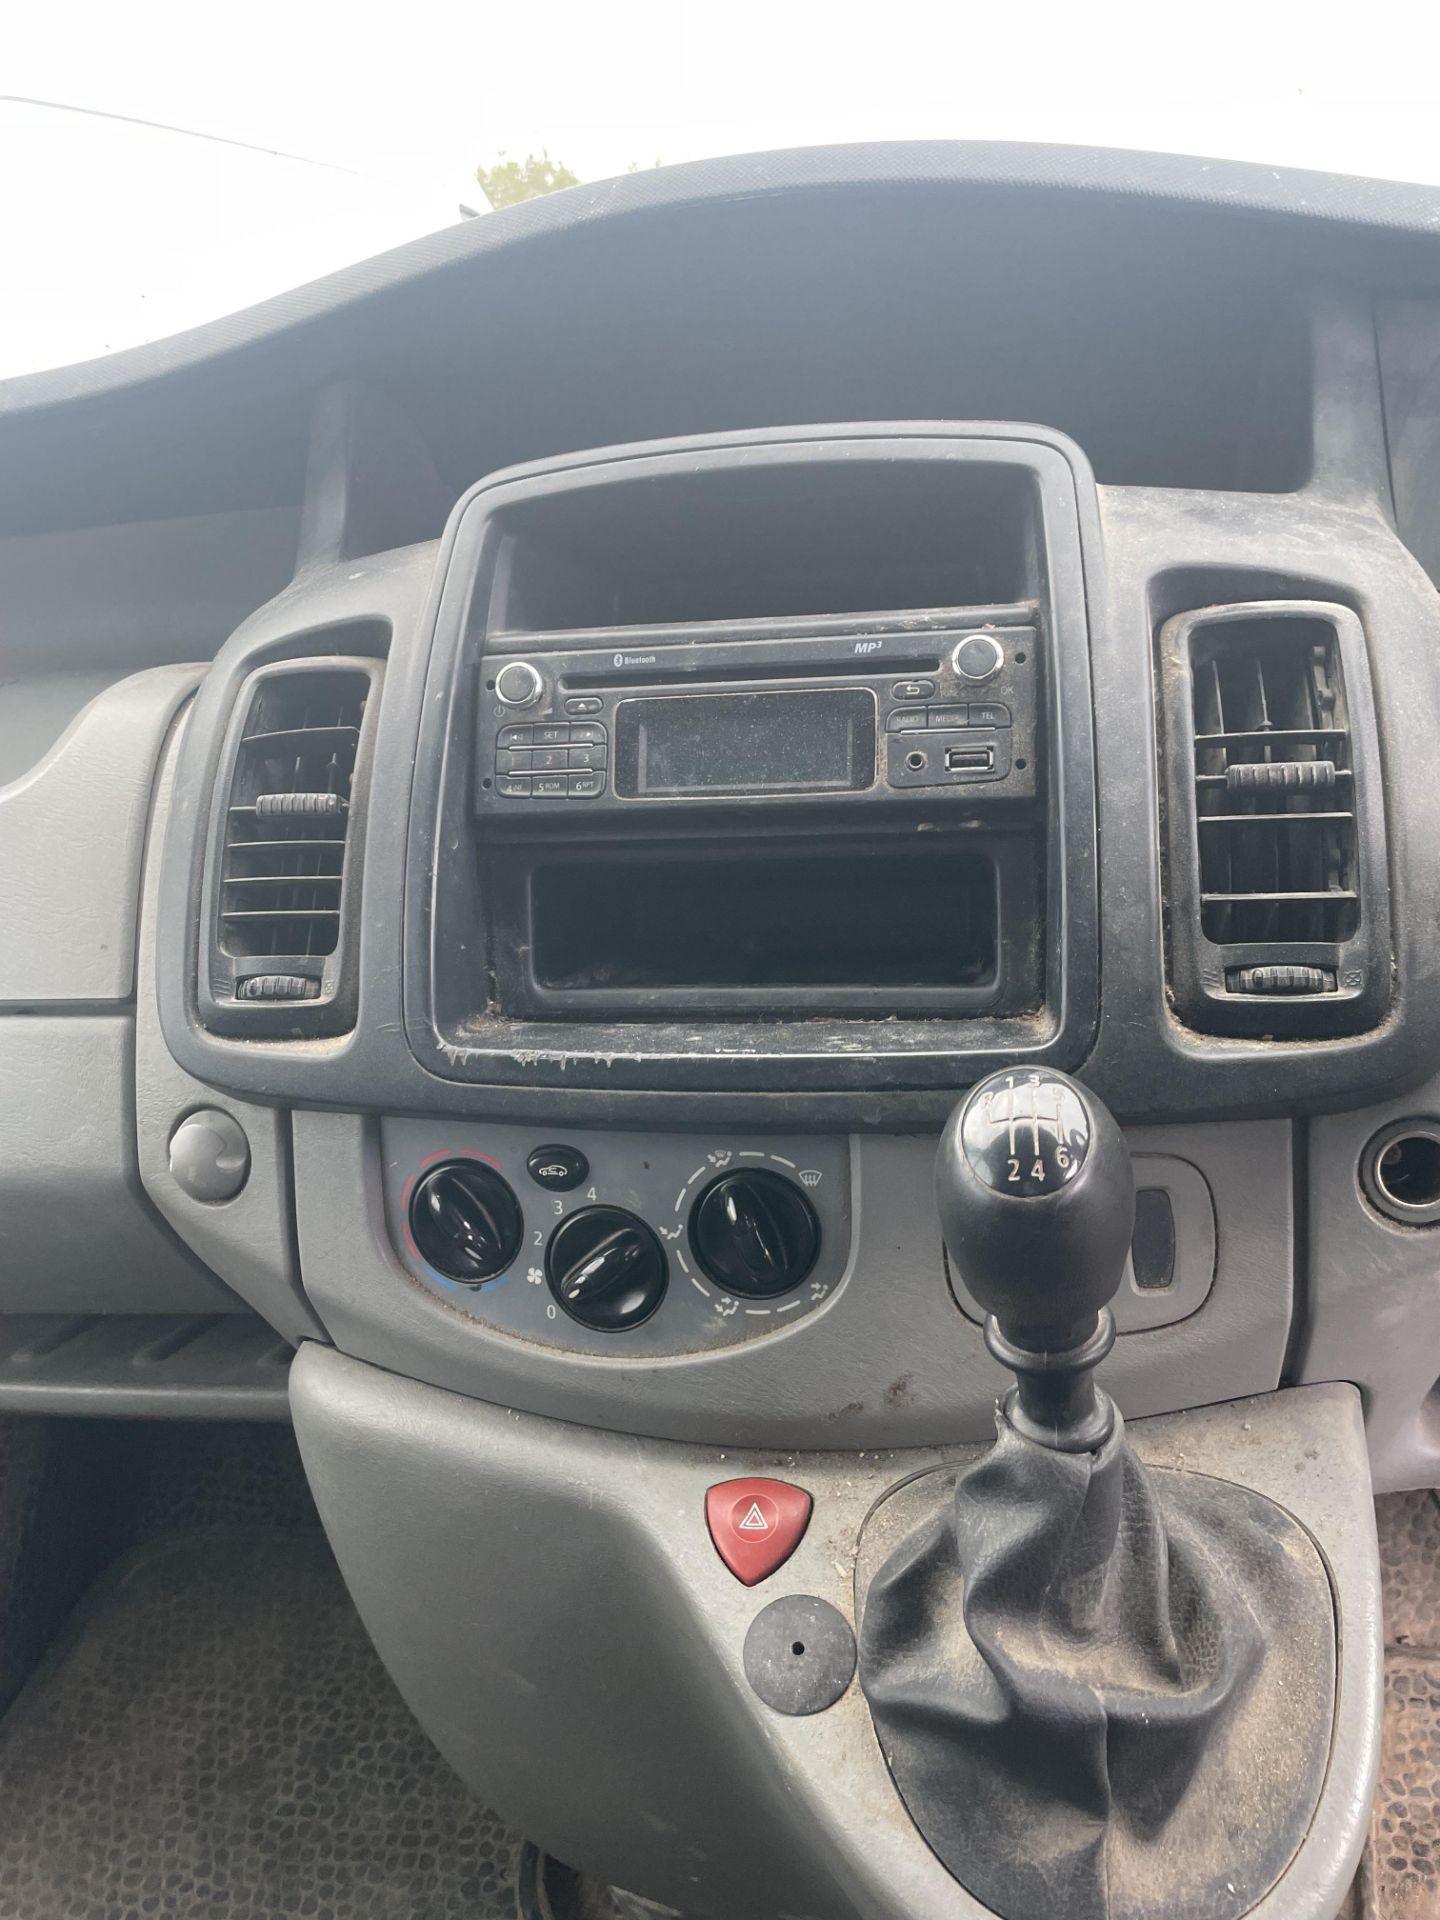 ** ON SALE ** Vauxhall Vivaro 2900 2.0 115 H3 L3 Panel Van 2014 '14 Reg' -Bluetooth Handsfree - Image 20 of 24